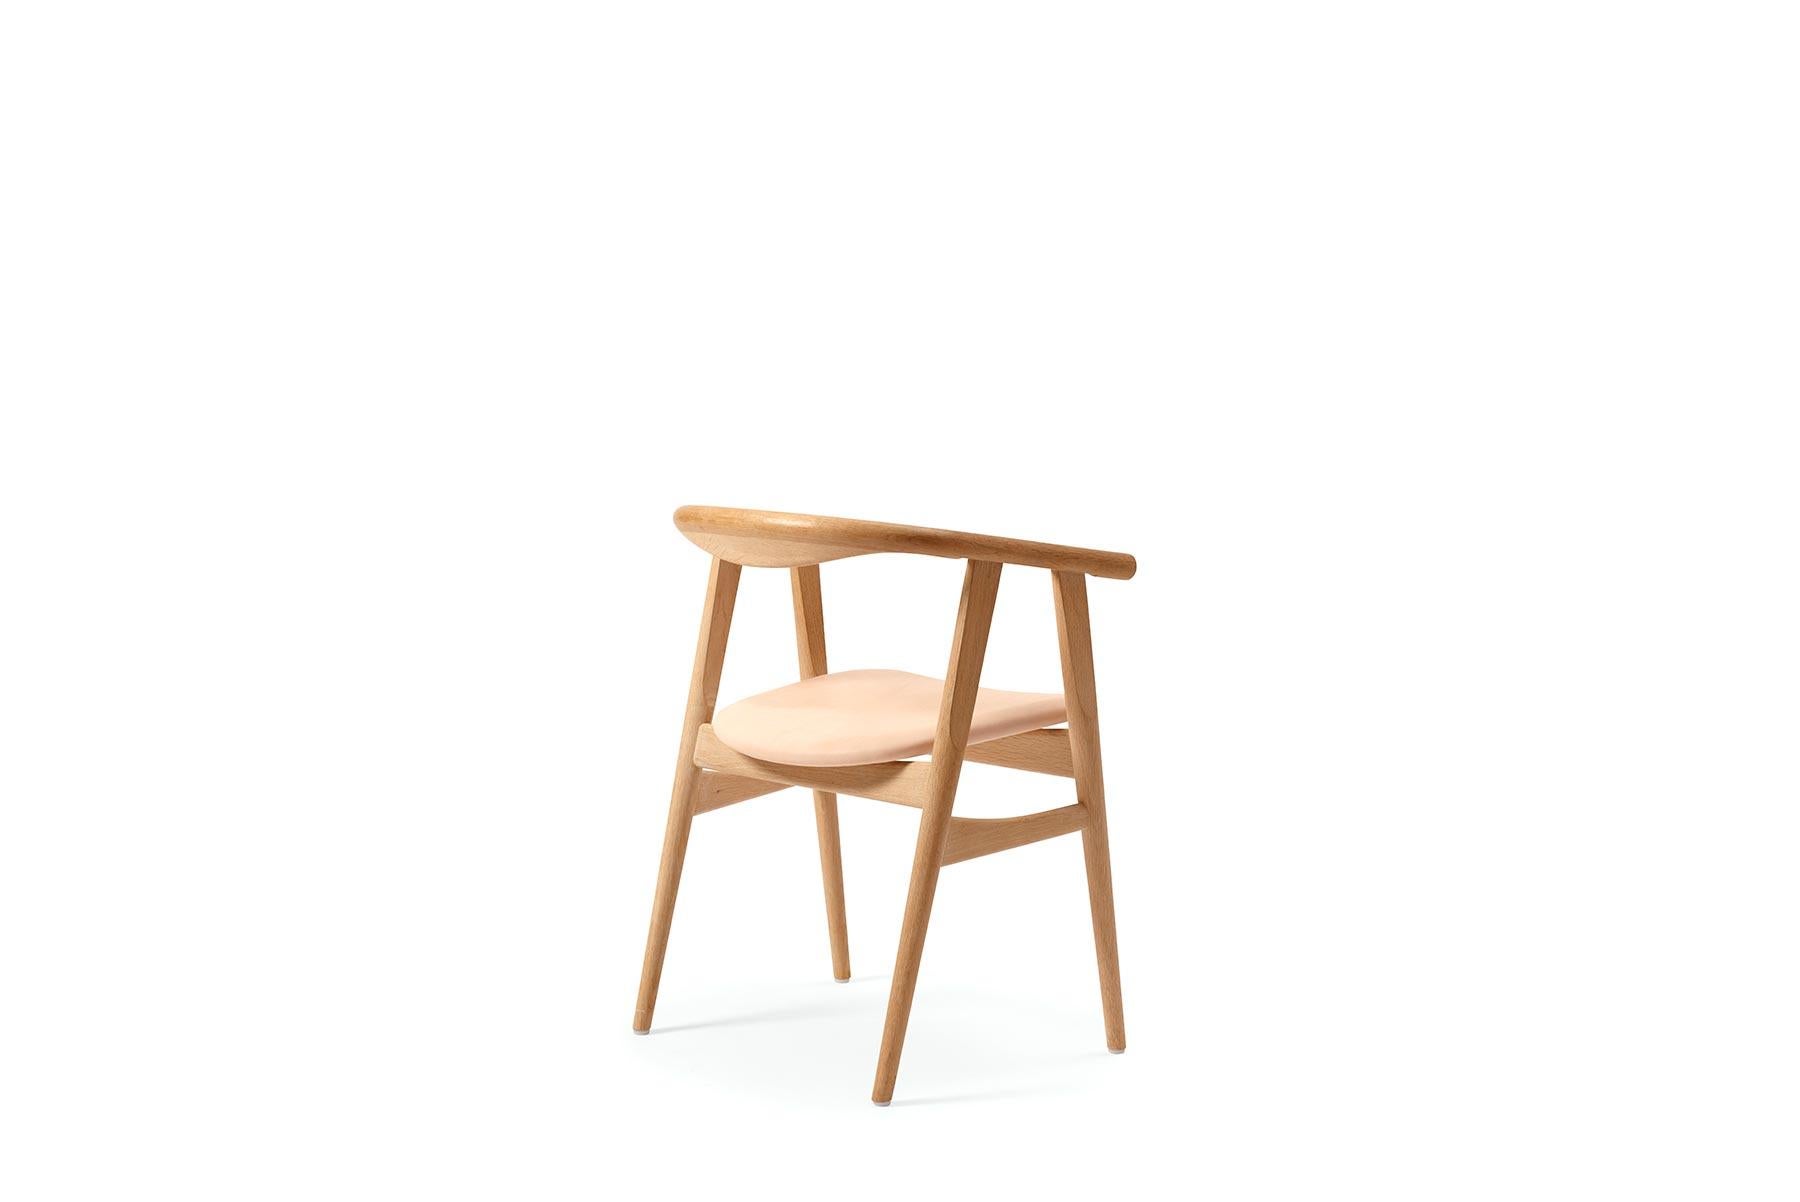 Der 1970 von Hans Wegner entworfene GE 525 Esszimmerstuhl bietet ein wunderschön abgerundetes, aus Holz geformtes Design. Der Stuhl wird in der GETAMA-Fabrik im dänischen Gedsted von erfahrenen Tischlern nach traditionellen skandinavischen Techniken